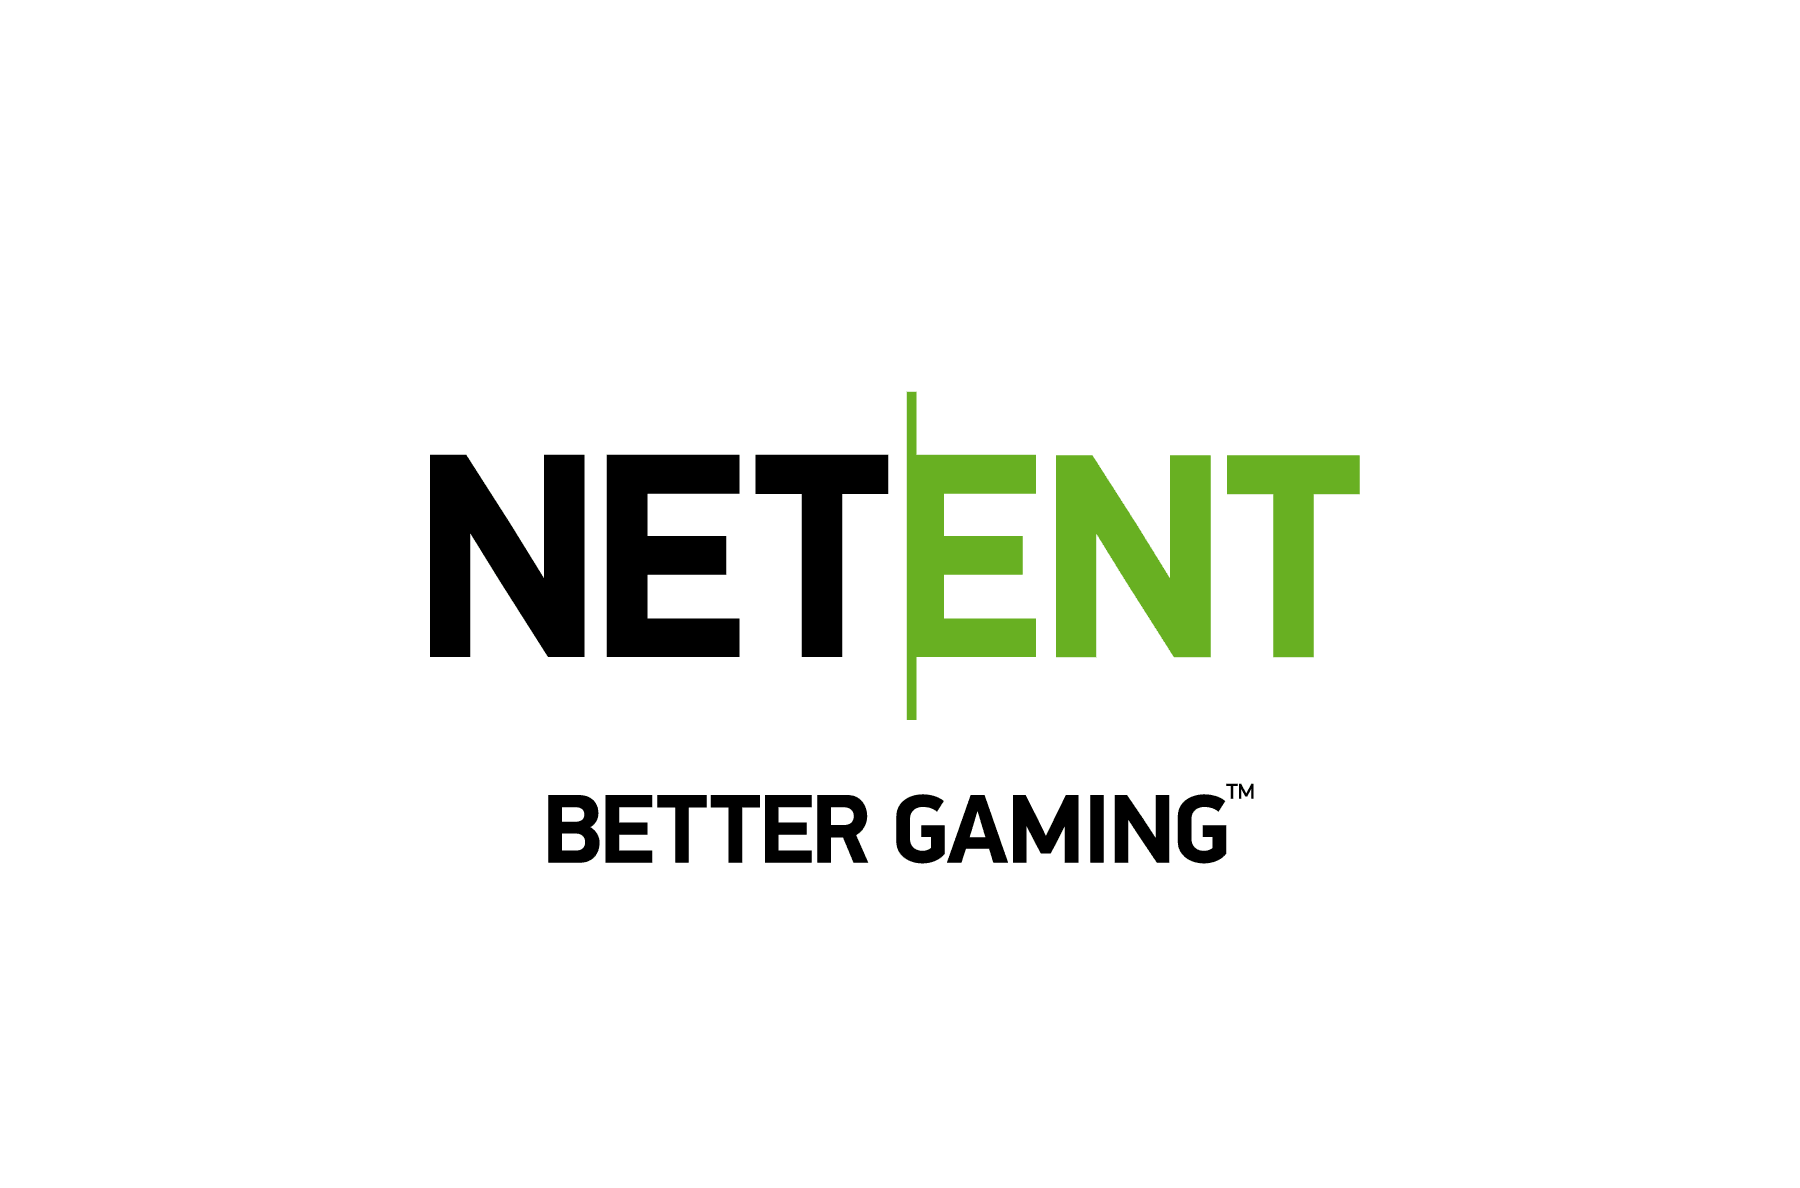 Meest populaire NetEnt online gokkasten